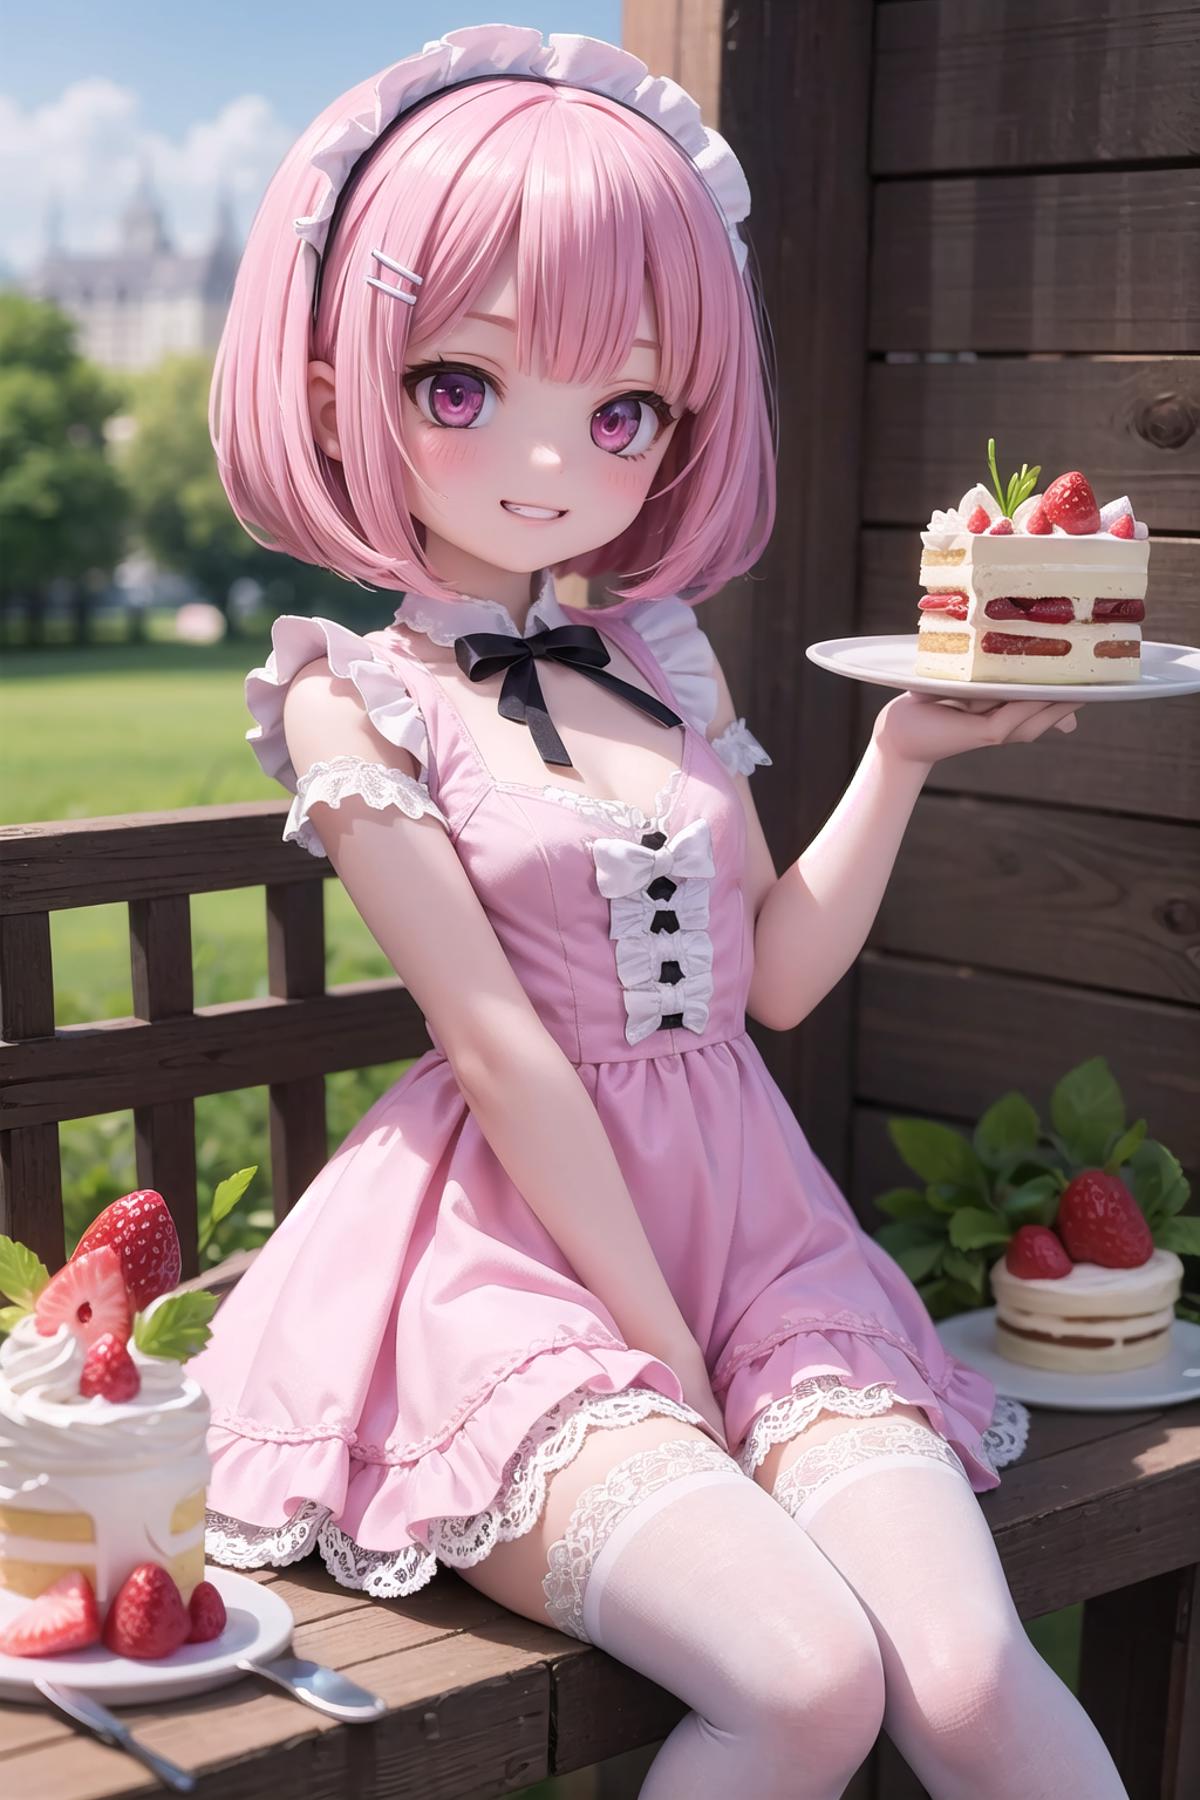 StrawberryShortcake image by Kybalico